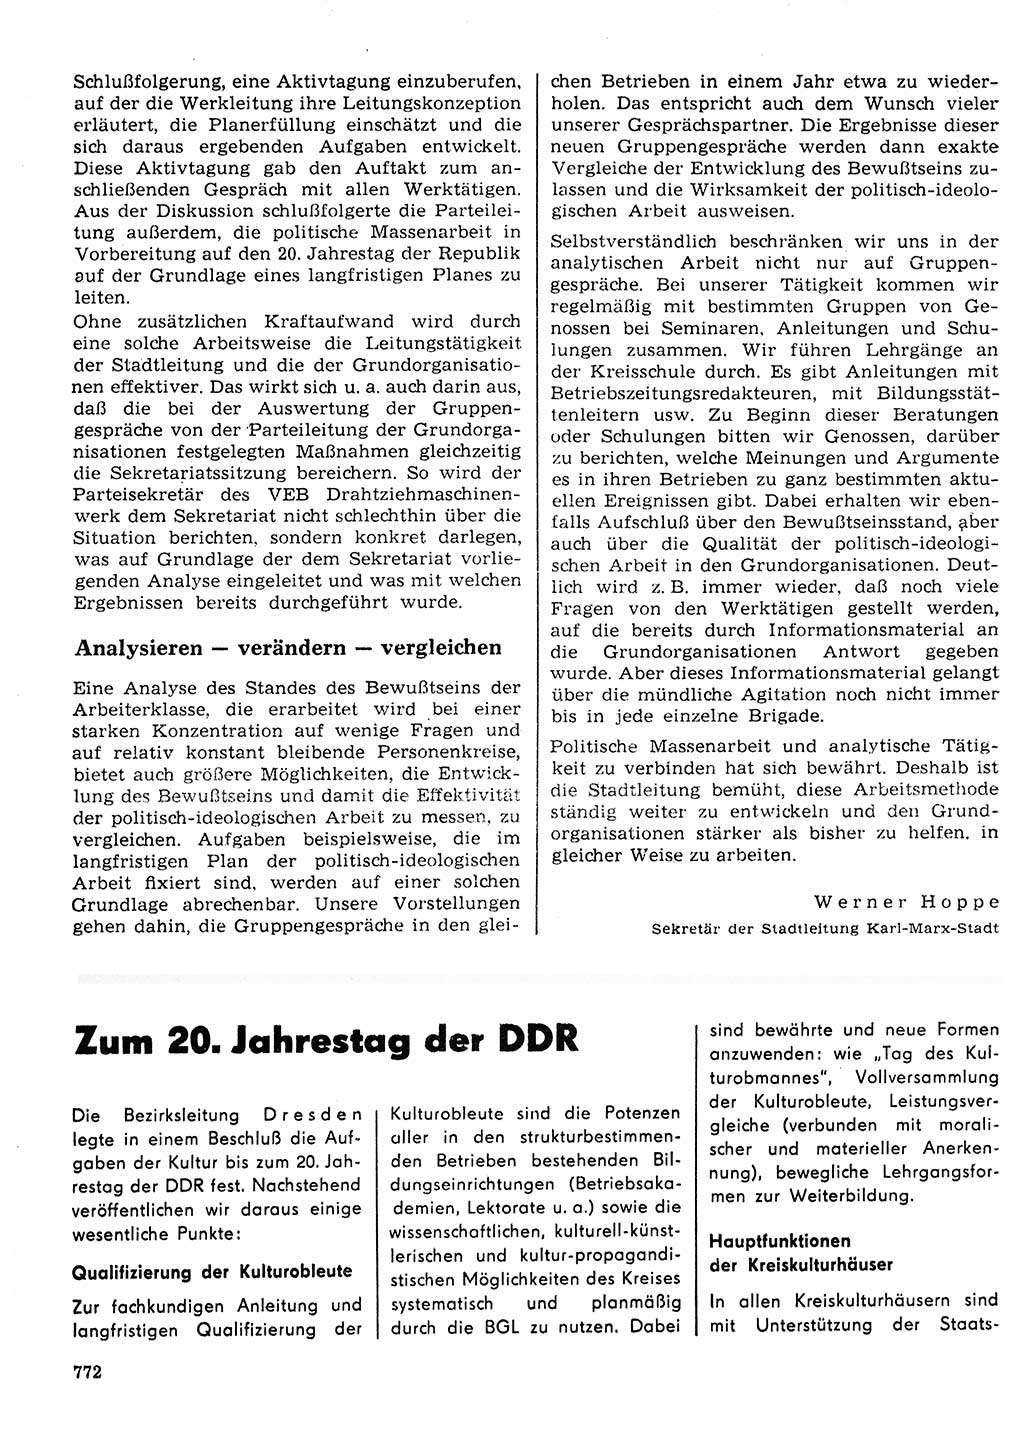 Neuer Weg (NW), Organ des Zentralkomitees (ZK) der SED (Sozialistische Einheitspartei Deutschlands) für Fragen des Parteilebens, 23. Jahrgang [Deutsche Demokratische Republik (DDR)] 1968, Seite 756 (NW ZK SED DDR 1968, S. 756)